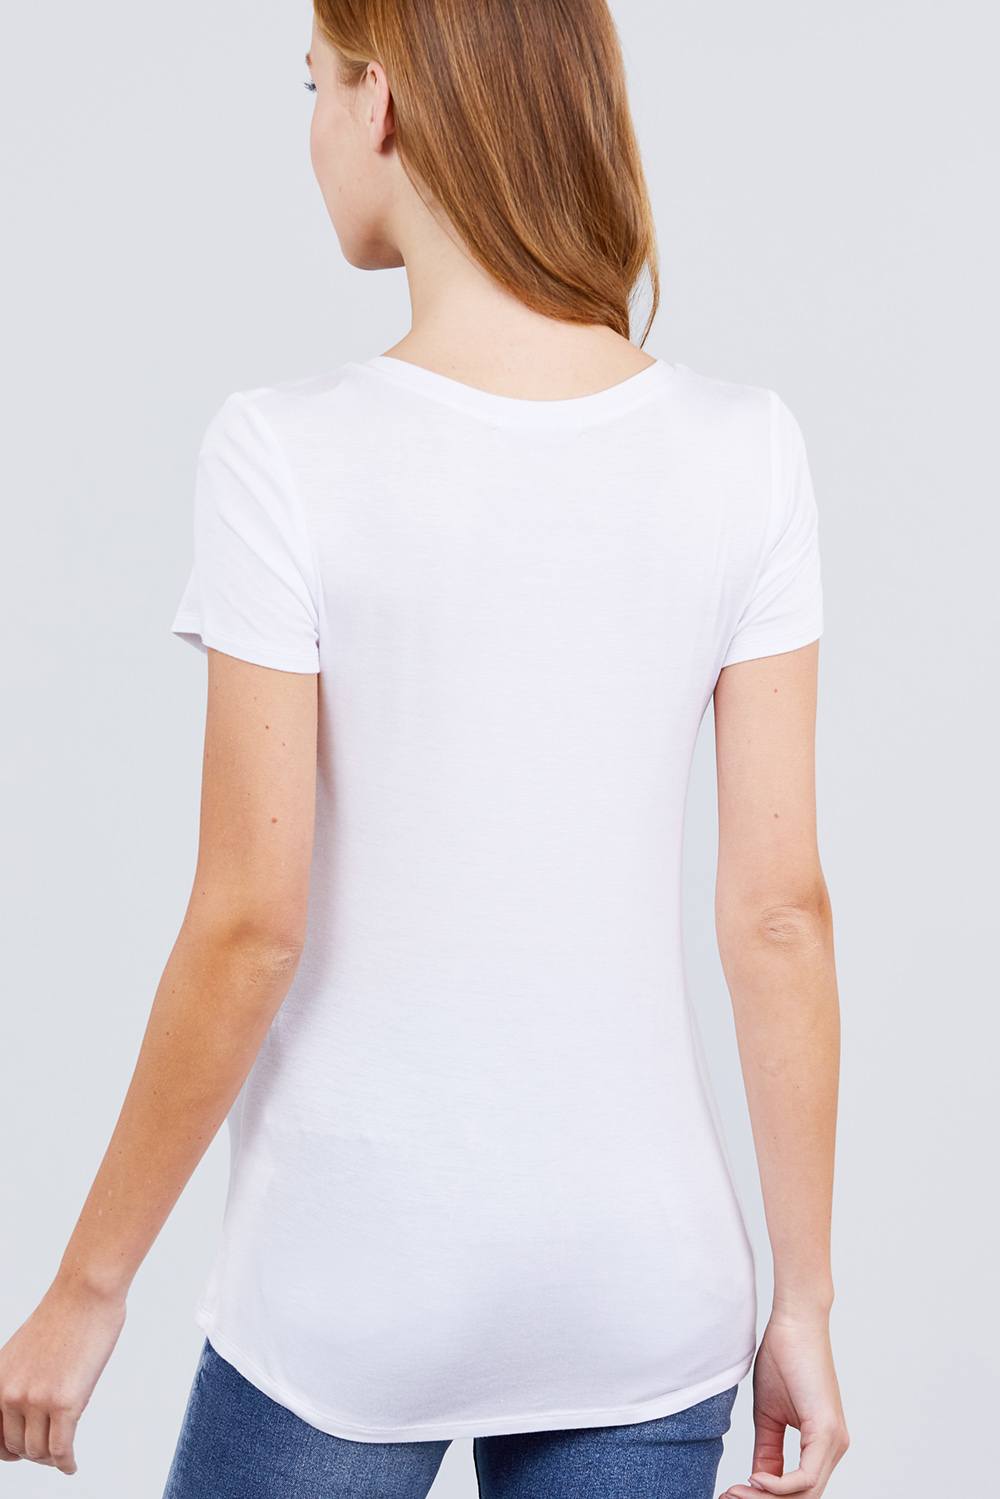 Glow Fashion Boutique White T-Shirt